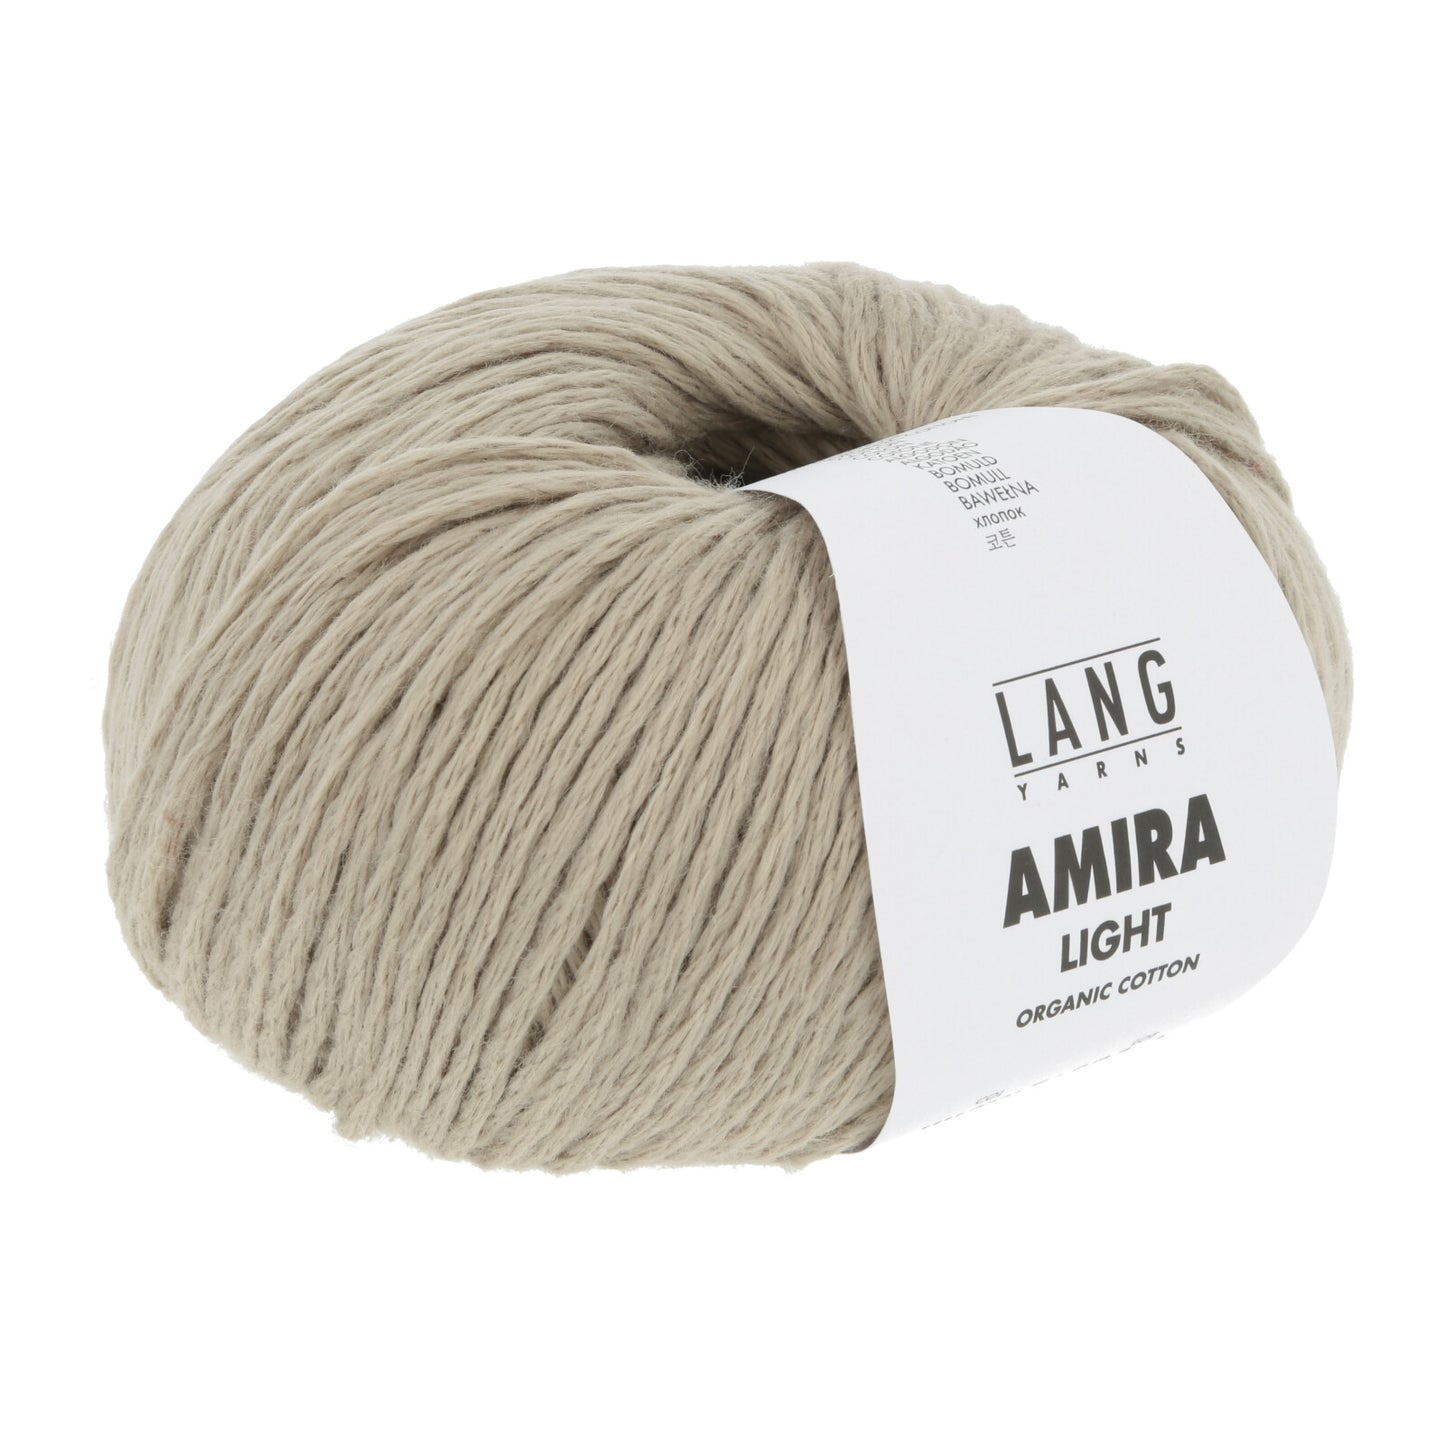 Amira Light | Lang Yarns